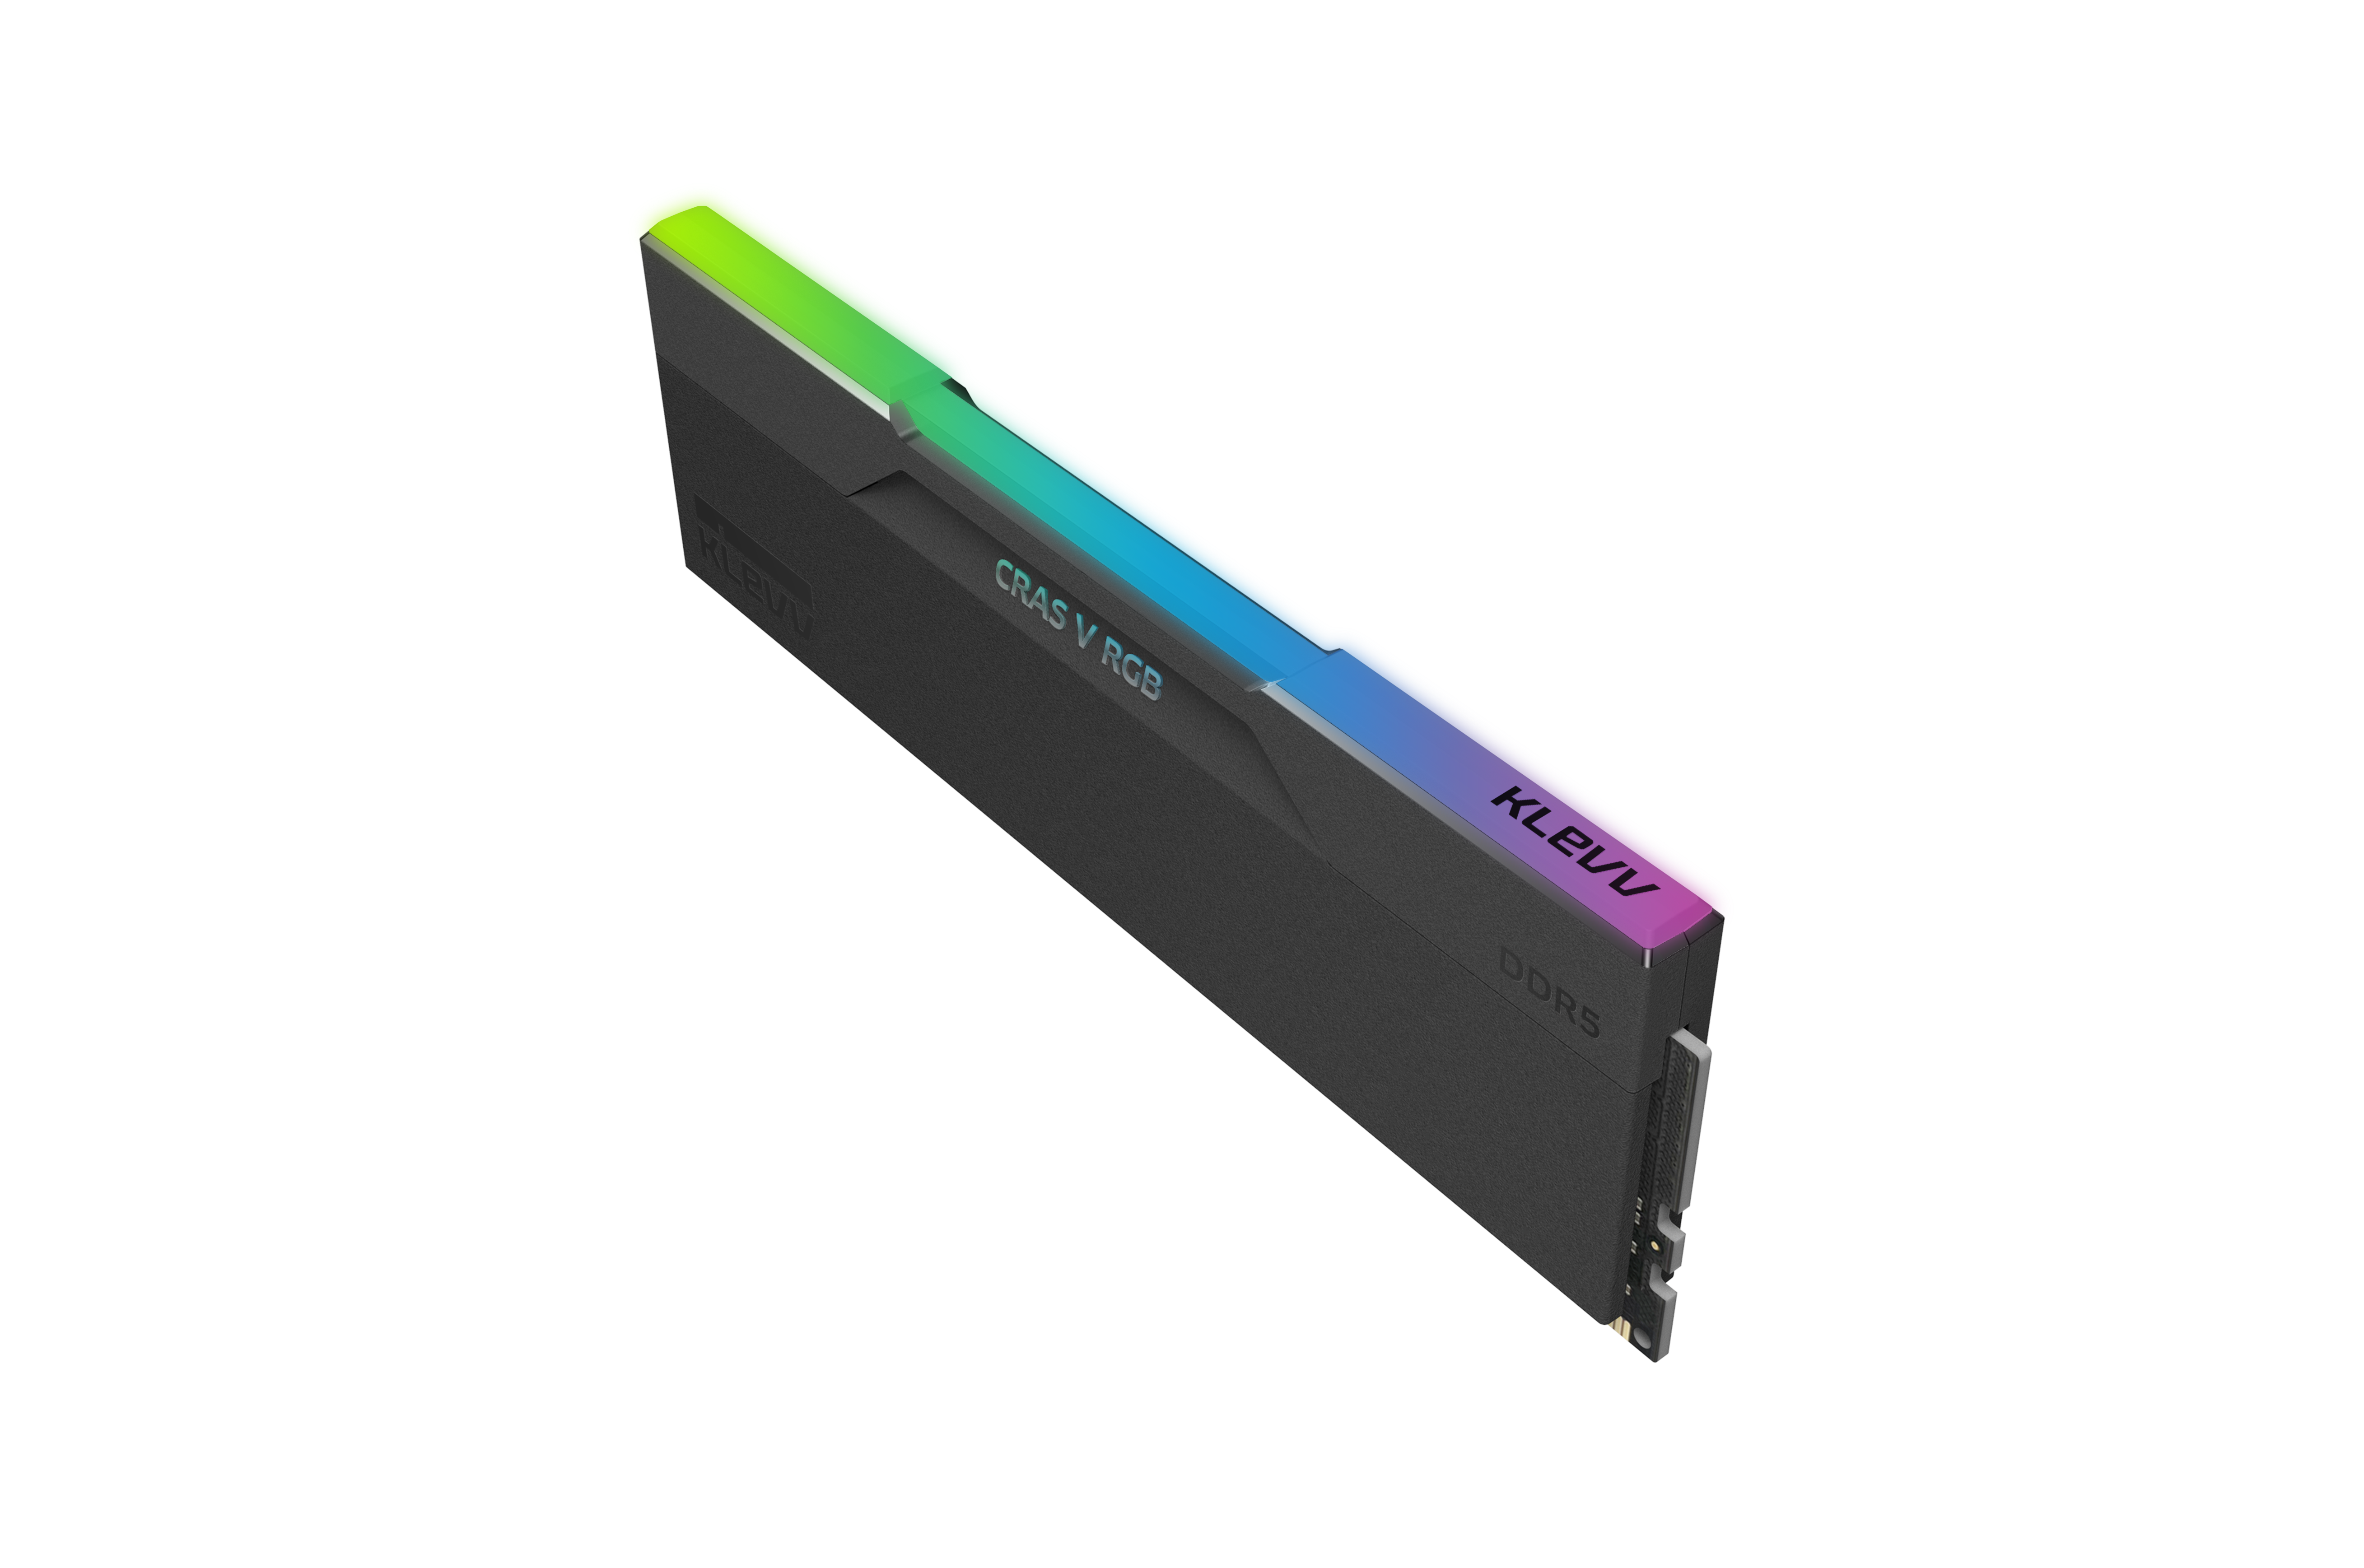 KLEVV CRAS V RGB DDR5 32 / 48 / 64 GB 6000-7600MHZ